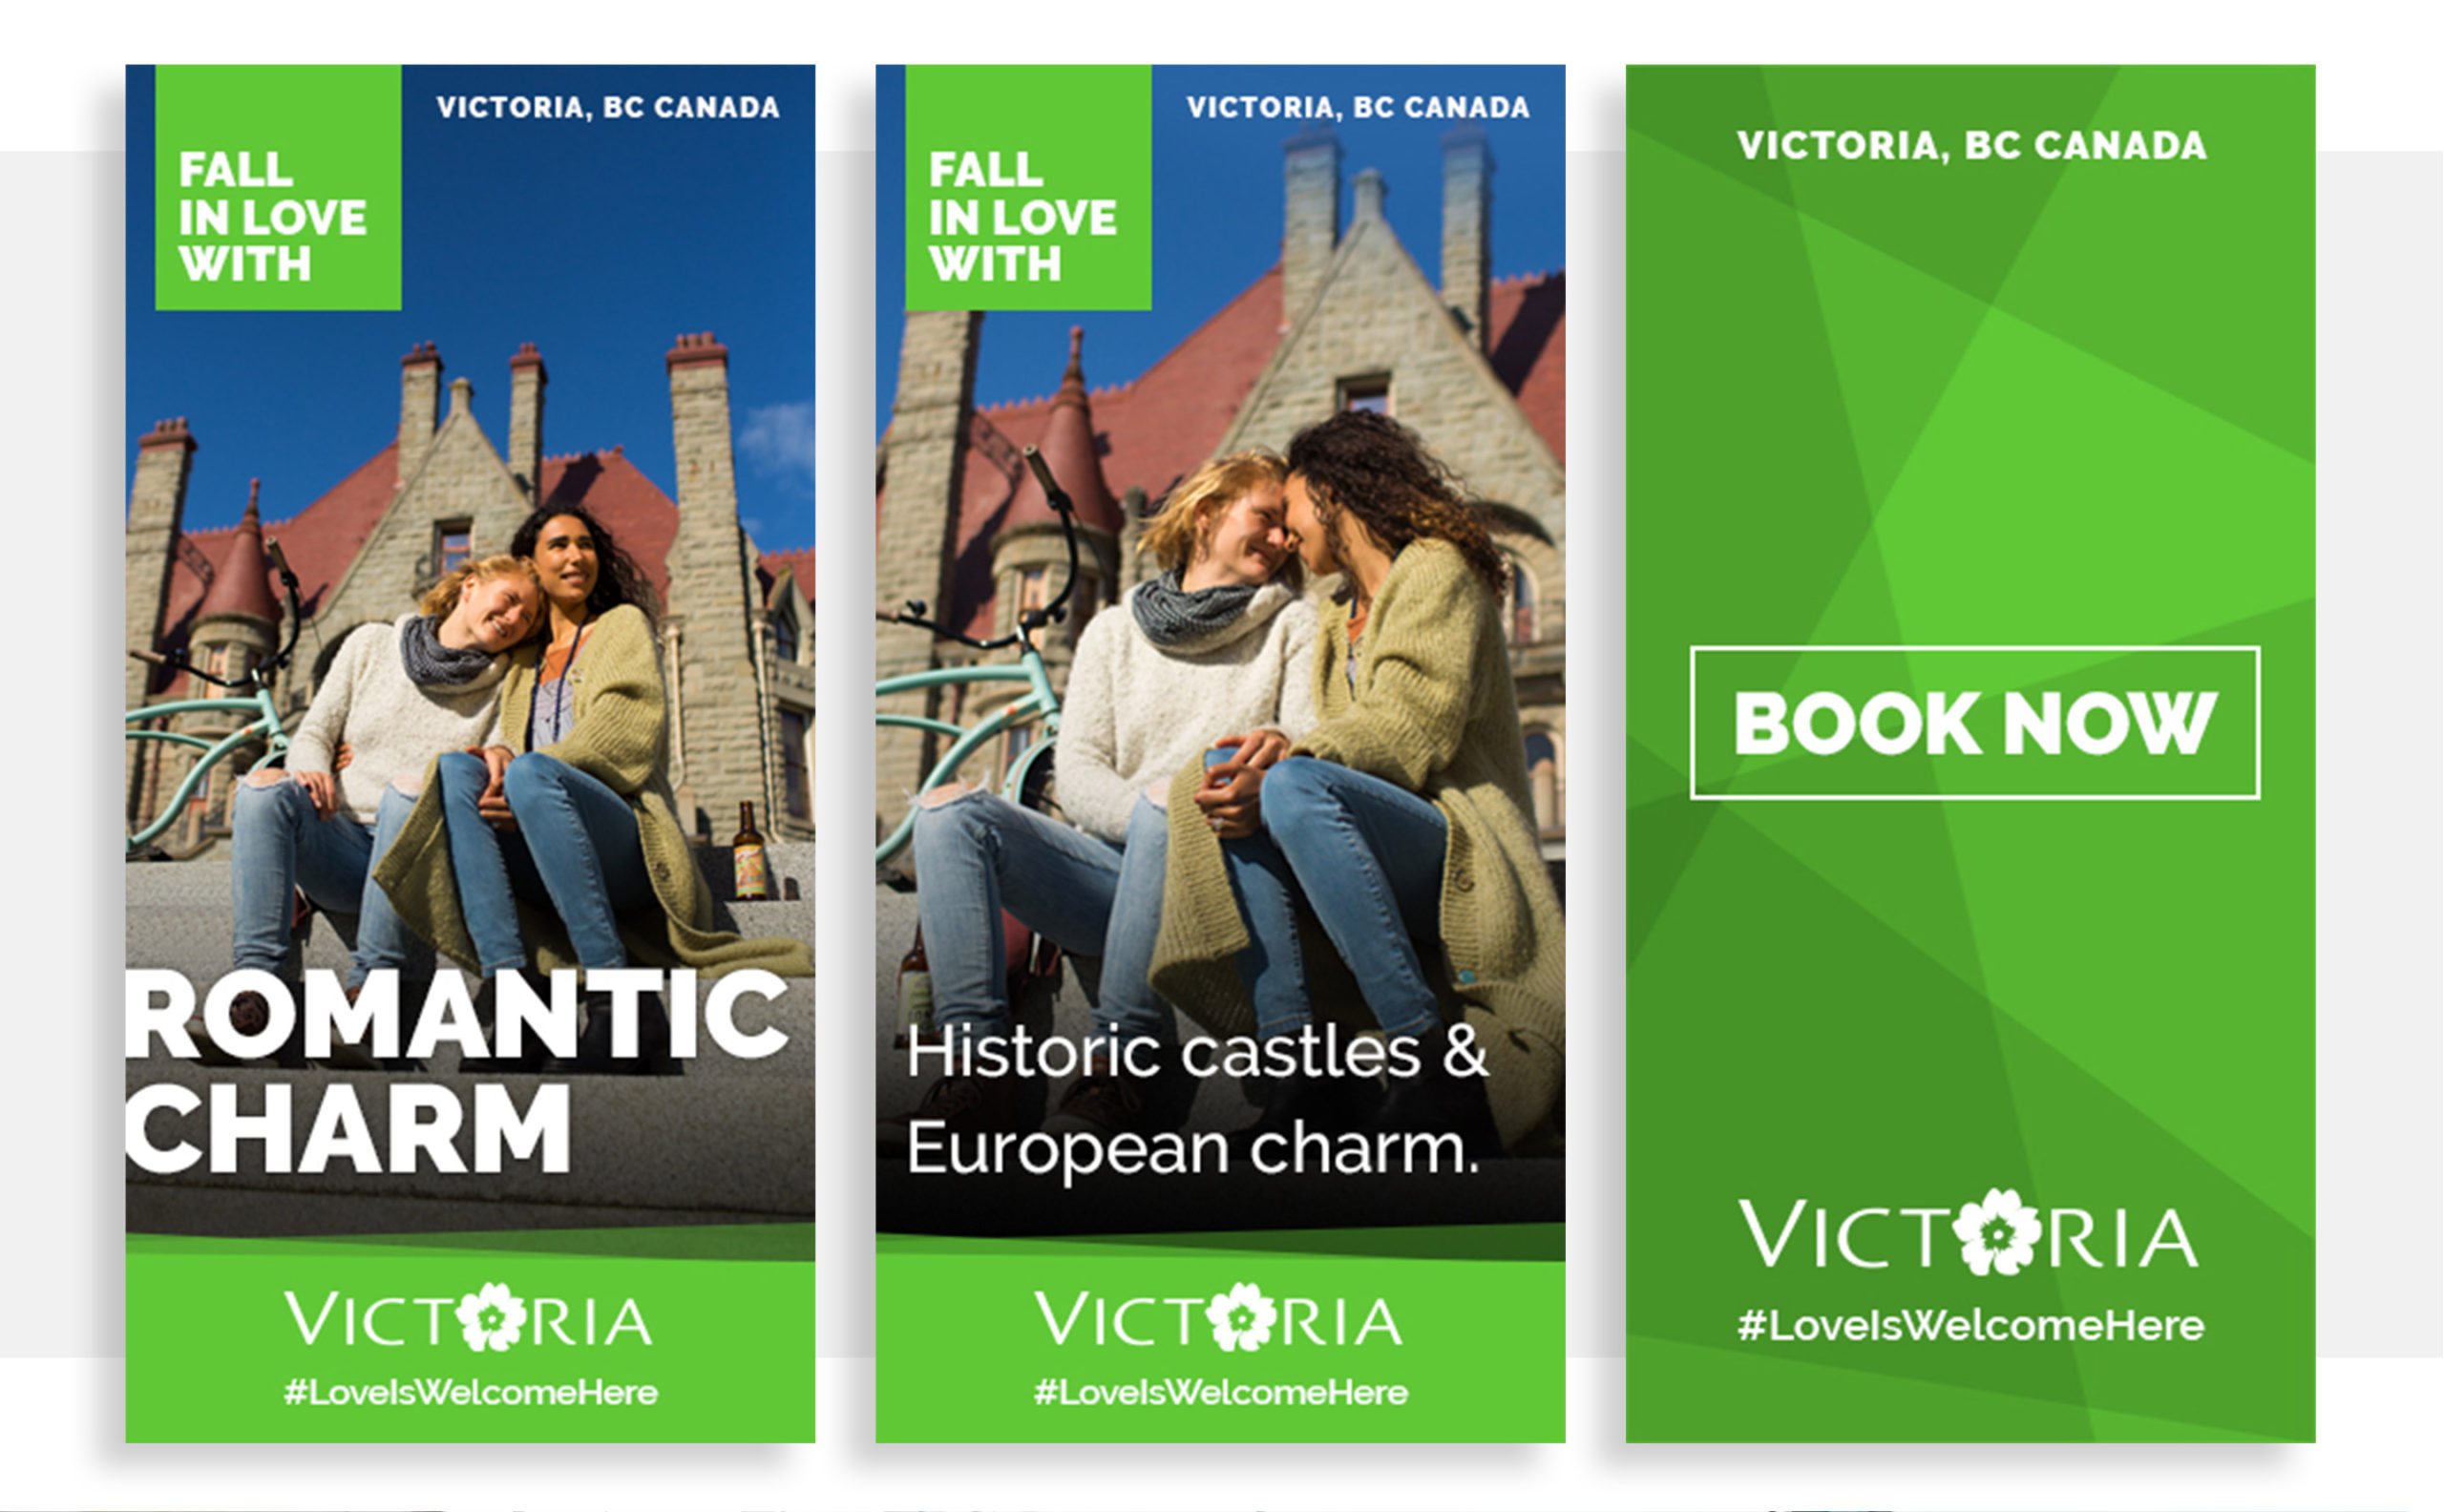 tourism victoria advertising